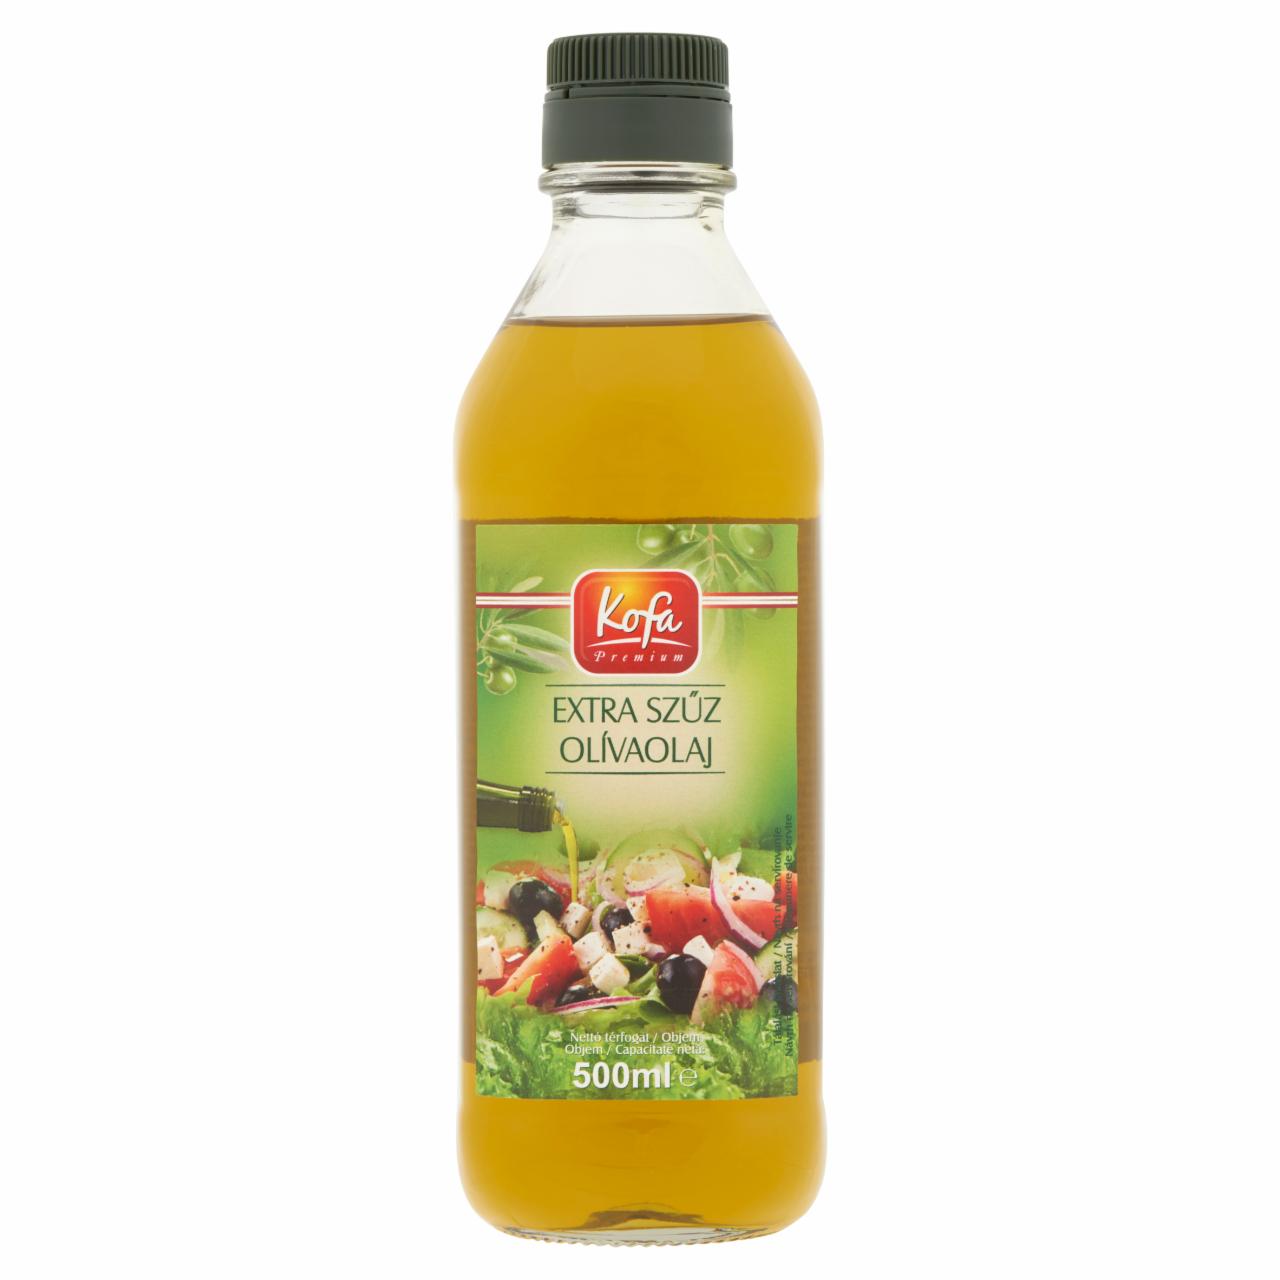 Képek - Kofa Premium extra szűz olívaolaj 500 ml